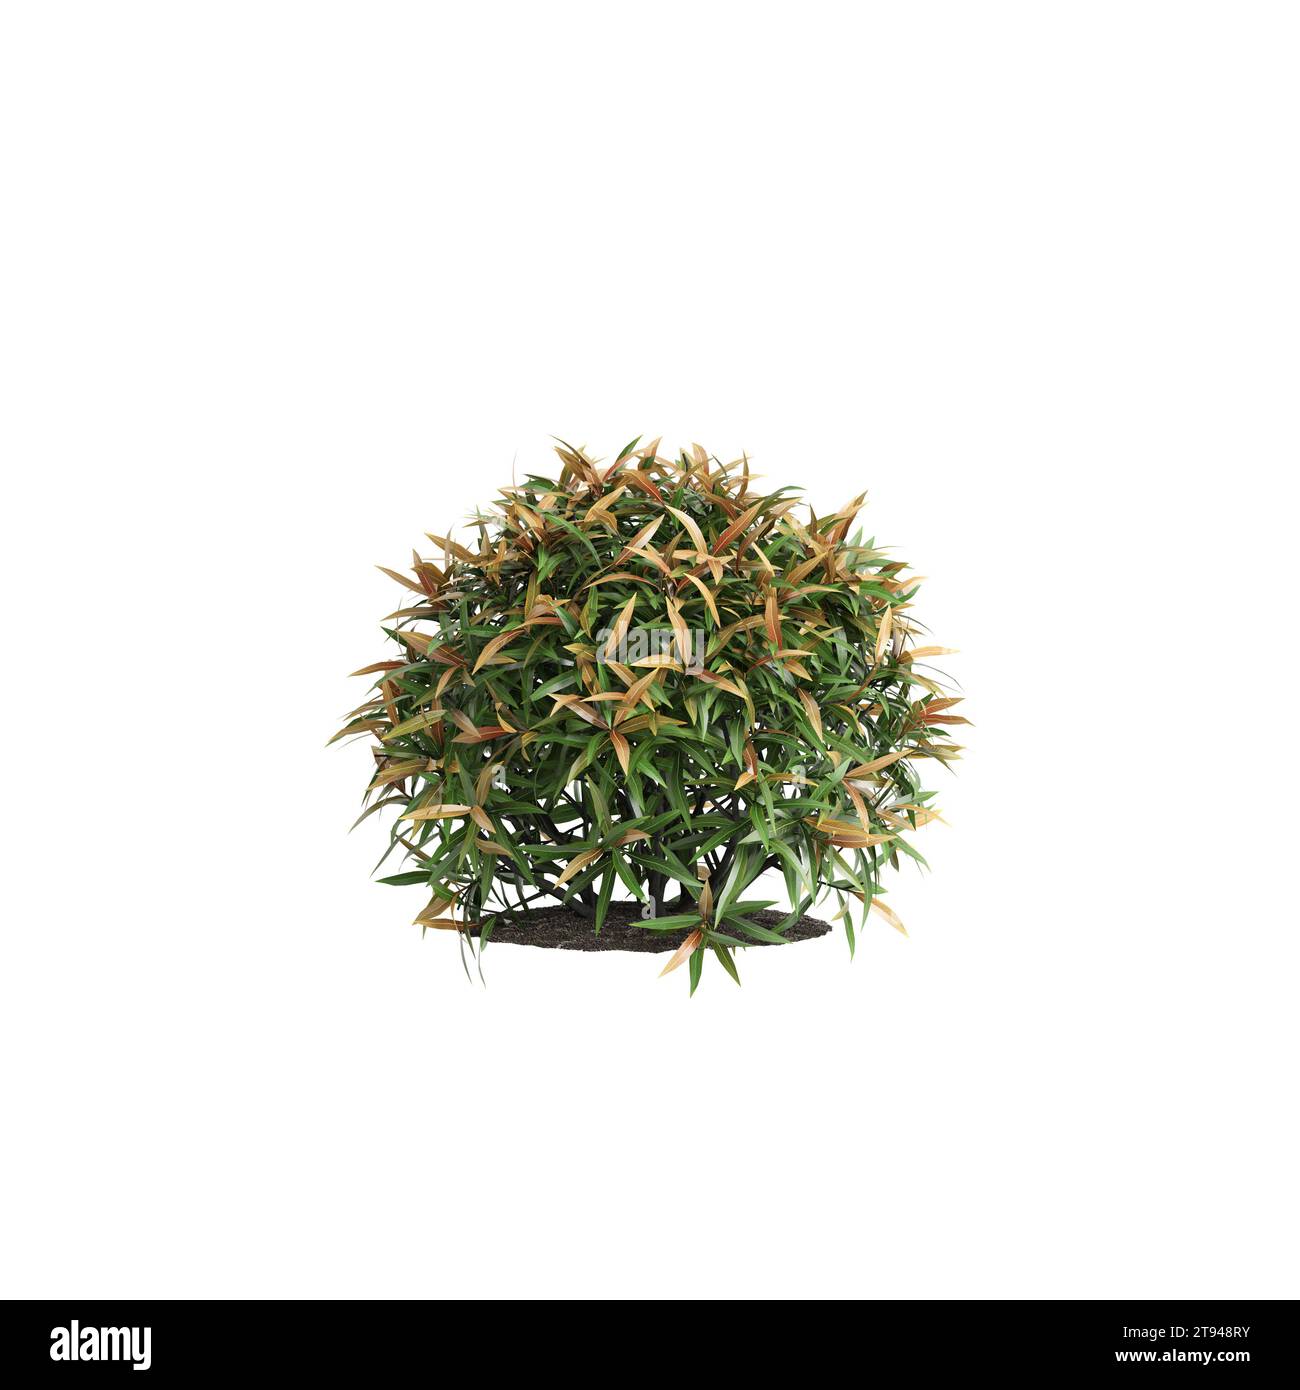 3d illustration of Leucothoe bush isolated on white background Stock Photo